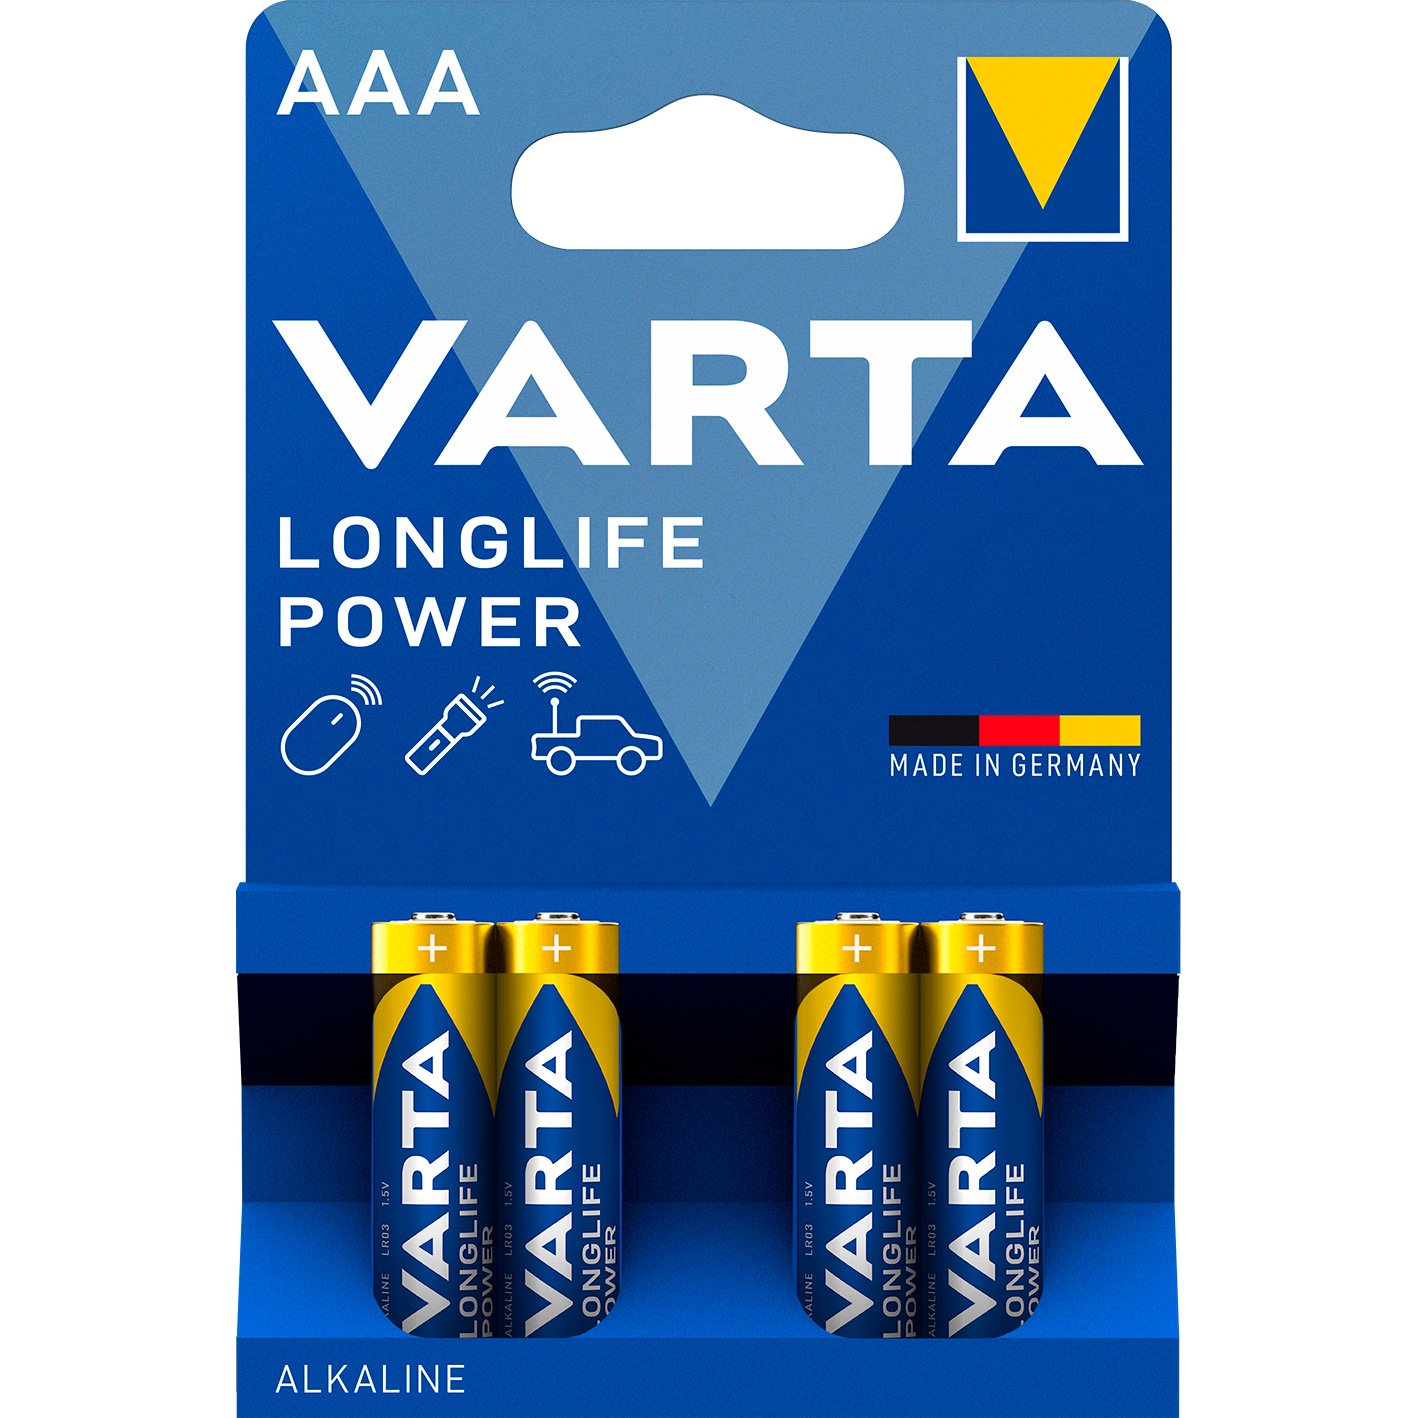 VARTA LongLife Power batteri AAA/LR03 1.5 v 4 stk